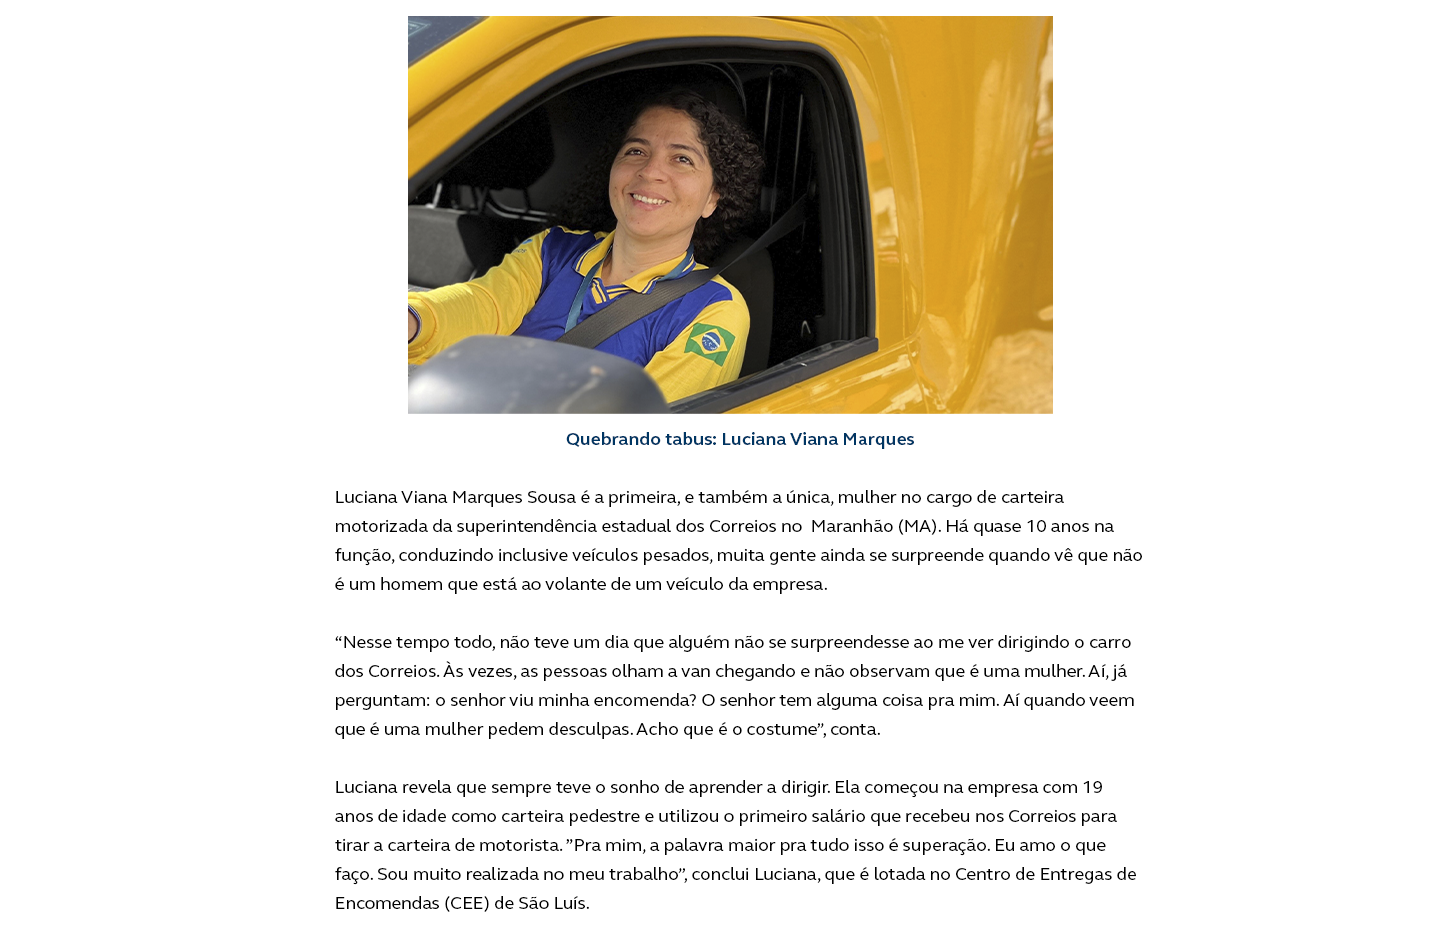 Imagem com história da carteira Luciana MArques Sousa, única mulher carteira motorizada no Maranhão. Imagem de mulher sorrindo dentro de um carro dos Correios